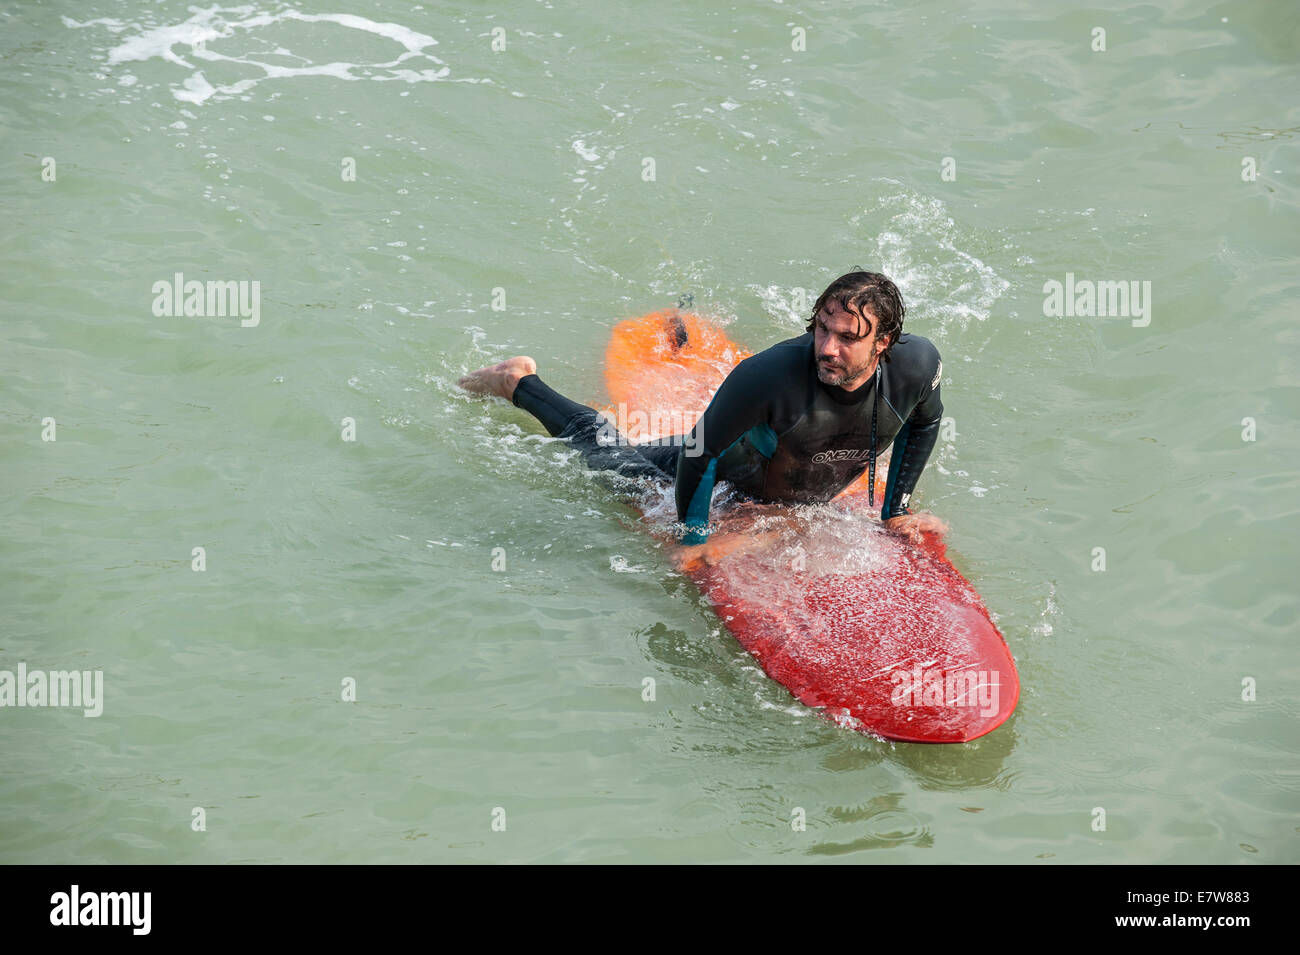 Surfer in wetsuit giacente sulla sua tavola da surf in mare alla ricerca di una grande onda / frantumatore per navigare su Foto Stock